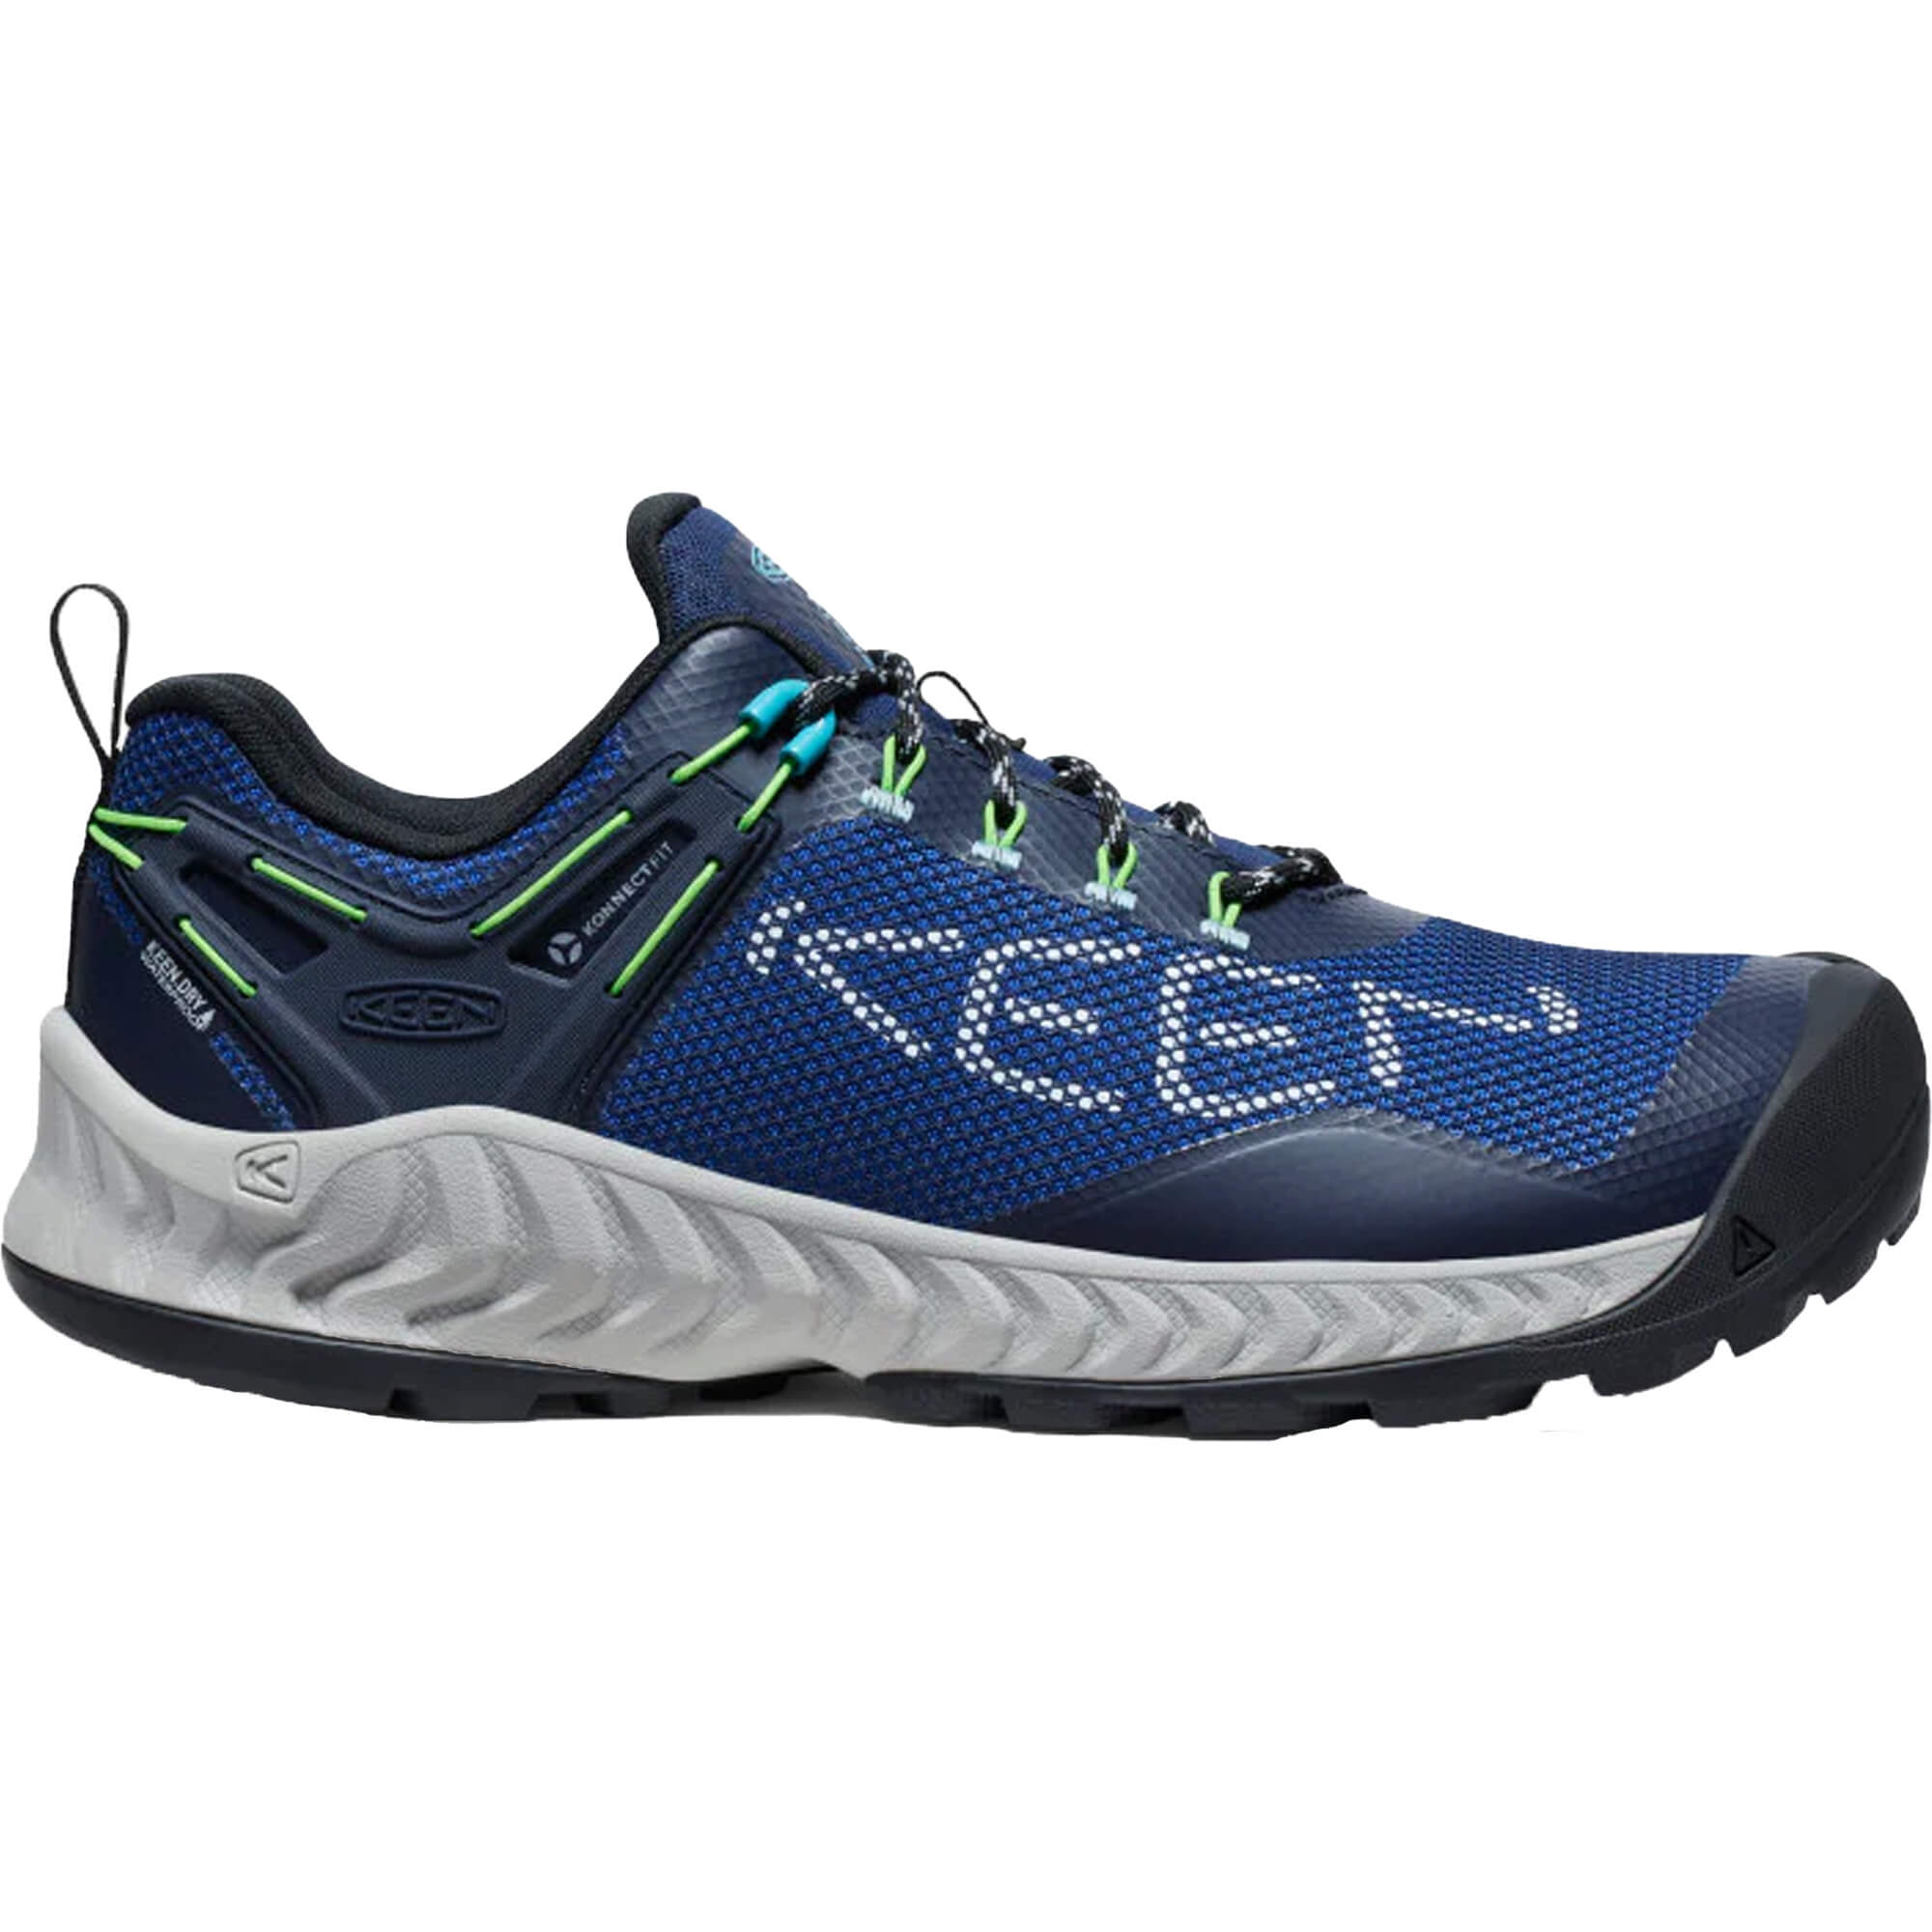 Keen NXIS EVO Waterproof Hiking Shoes